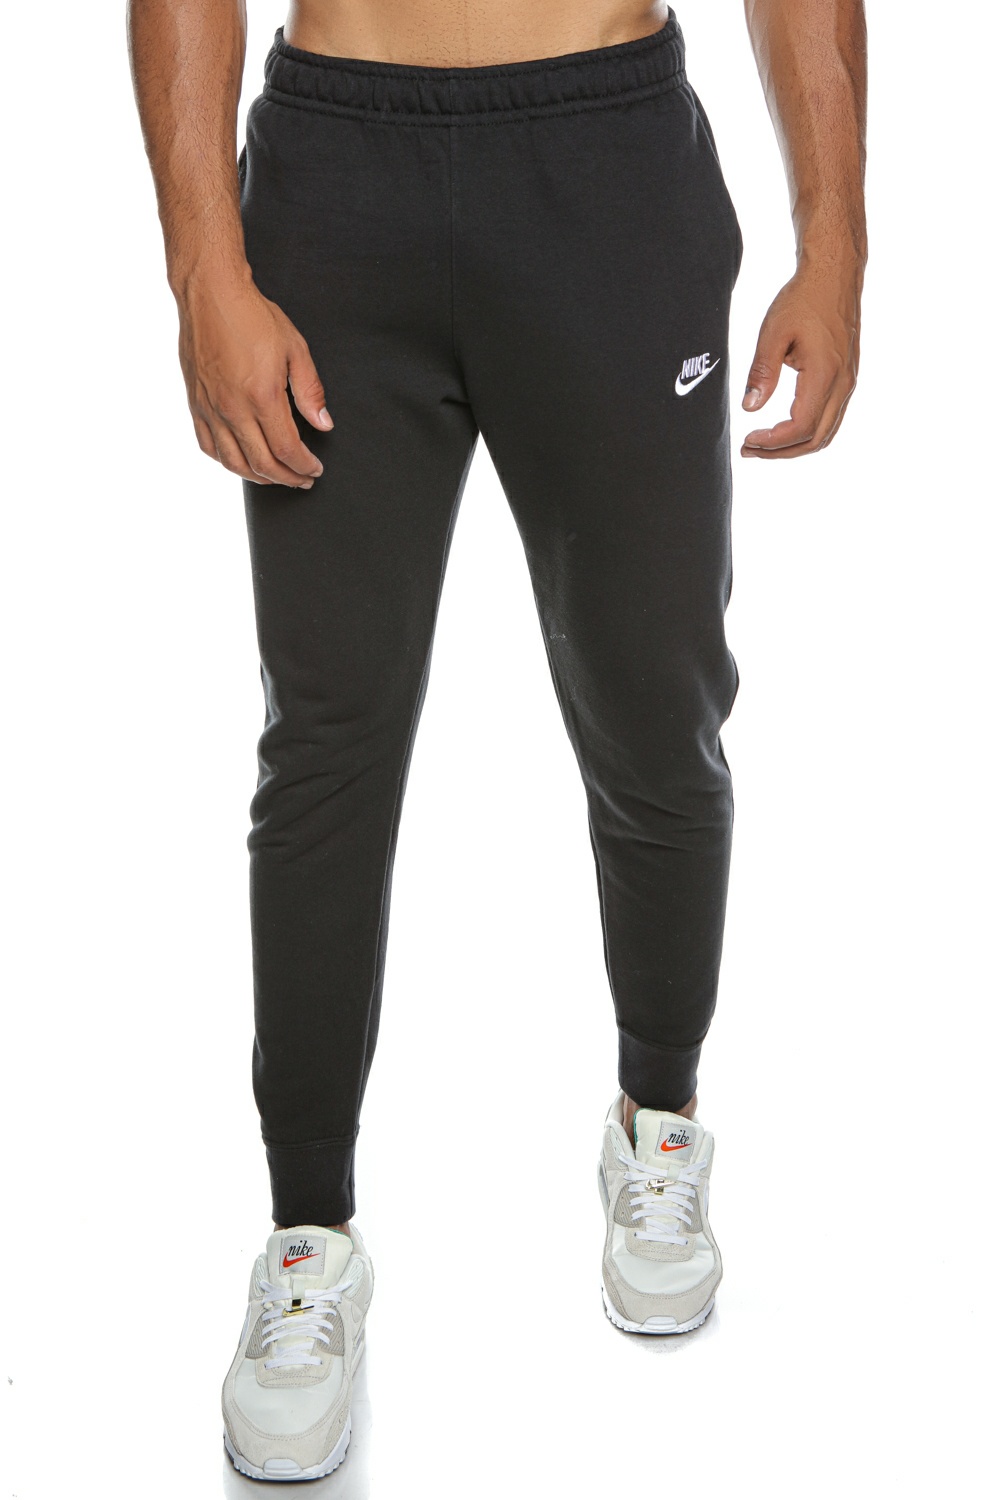 Ανδρικά/Ρούχα/Αθλητικά/Φόρμες NIKE - Ανδρικό παντελόνι φόρμας Nike Sportswear Club μαύρο